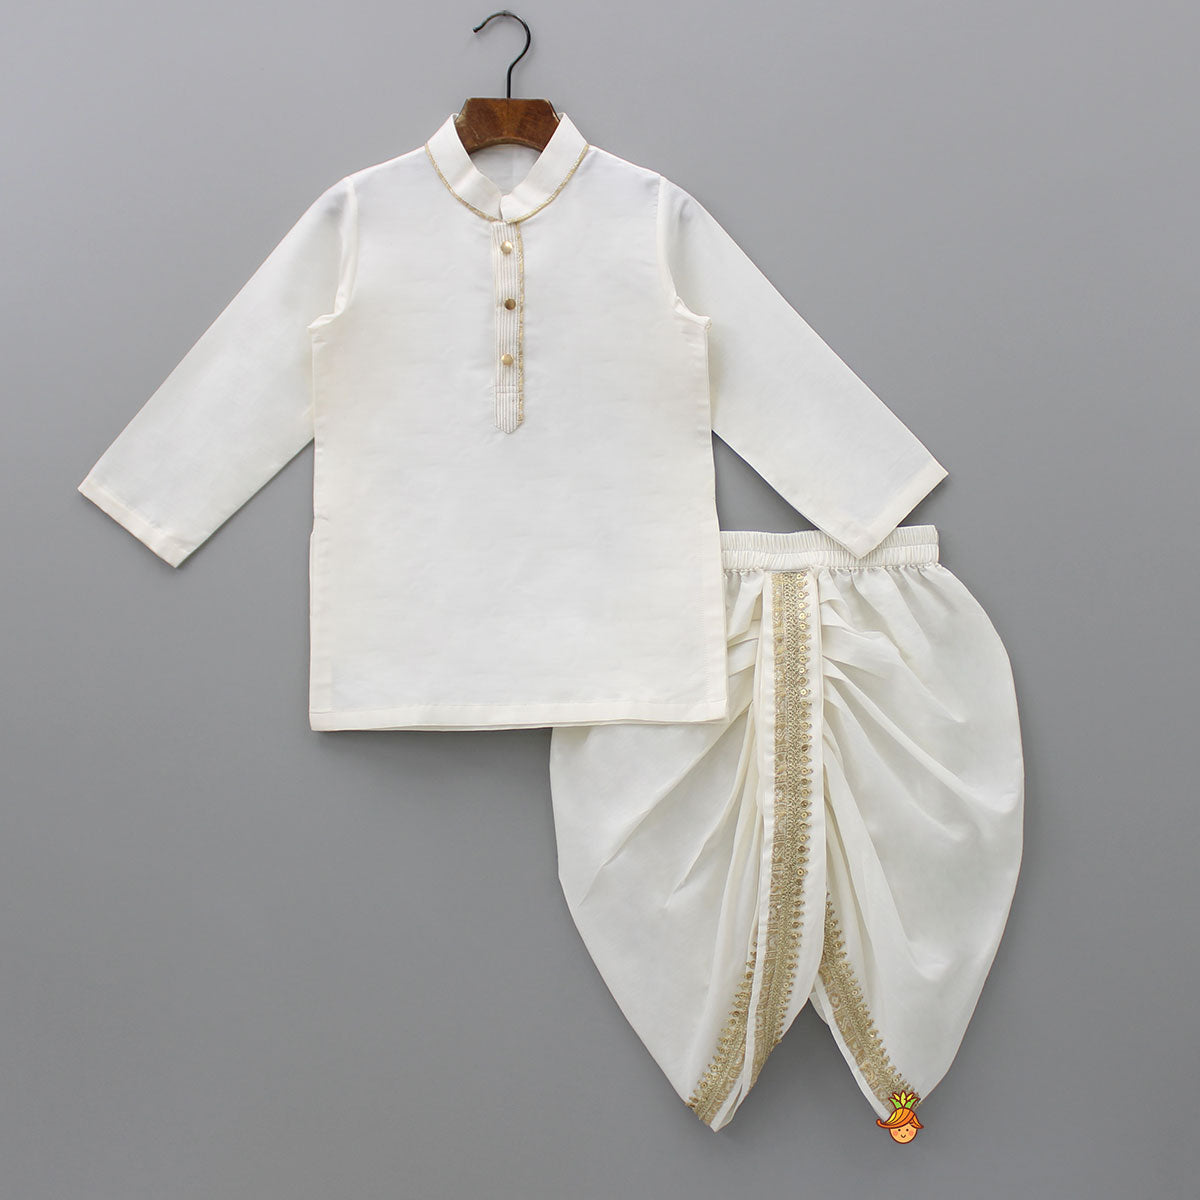 Kurta With Pocket Square Stylish Jacket And Lace Detailed Dhoti